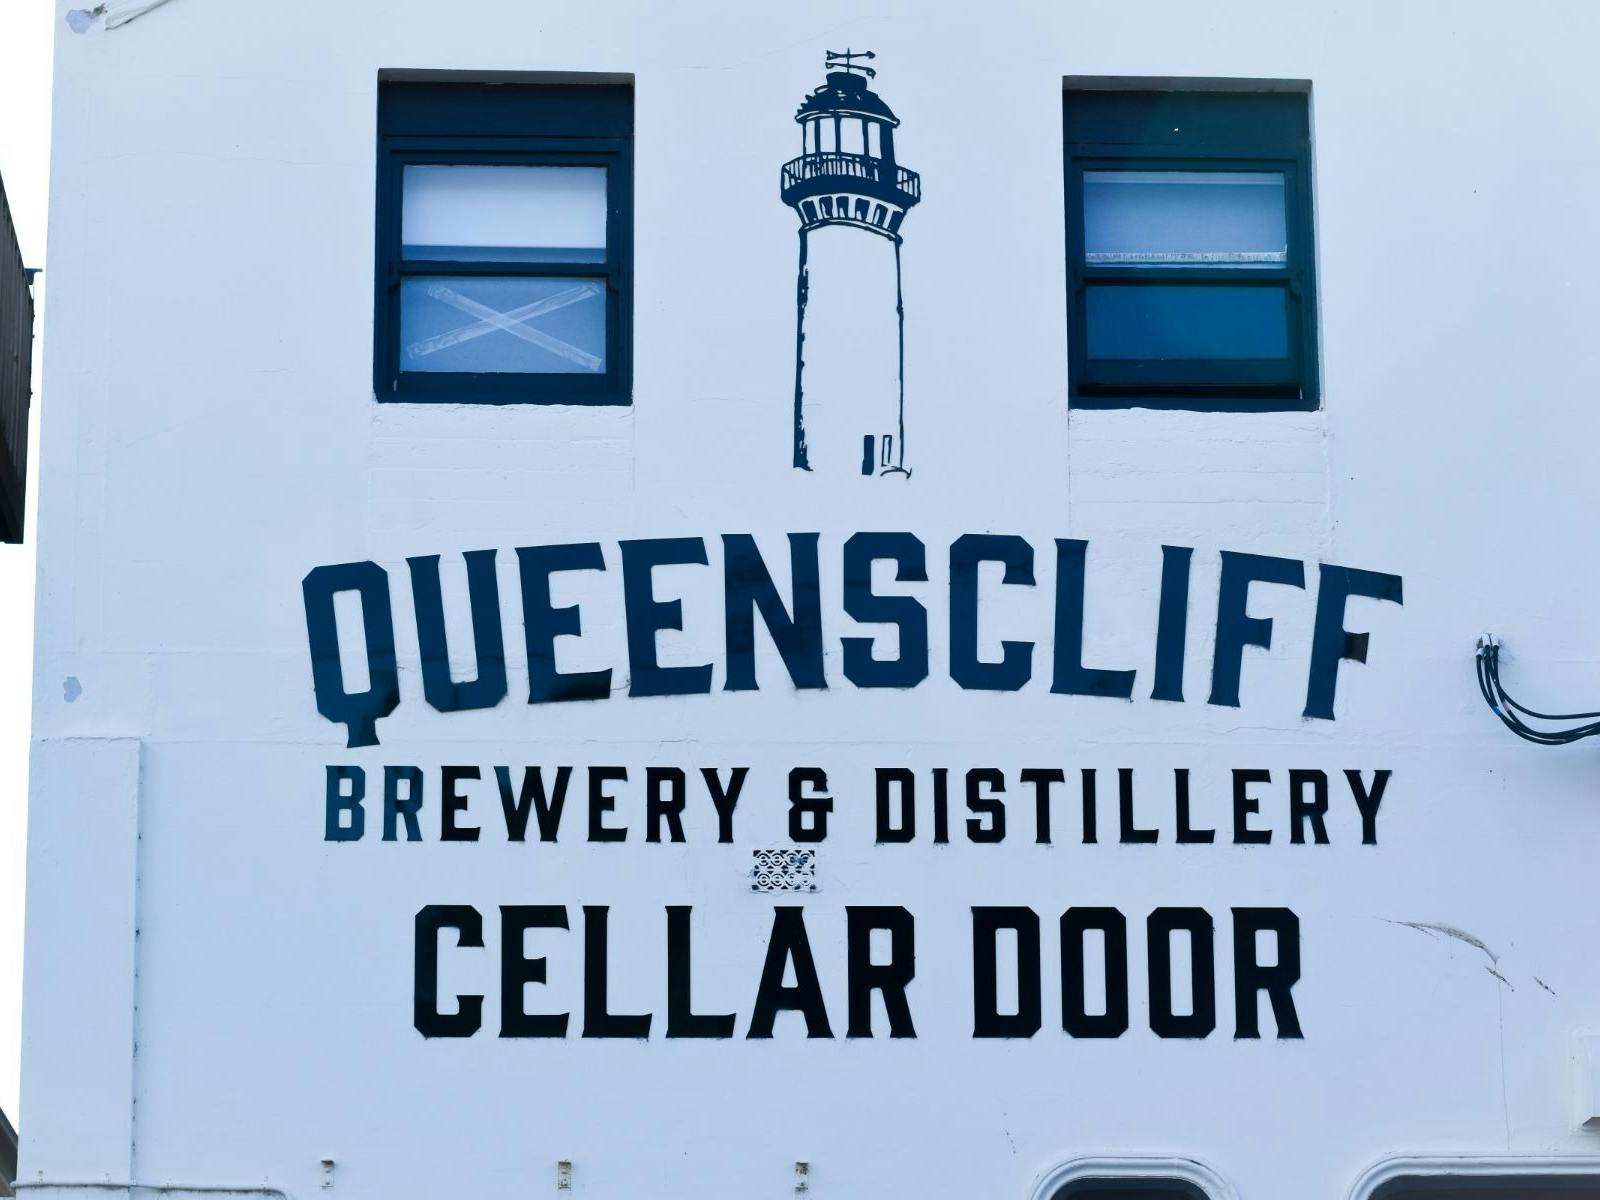 Queenscliff Distillery cellar door sign